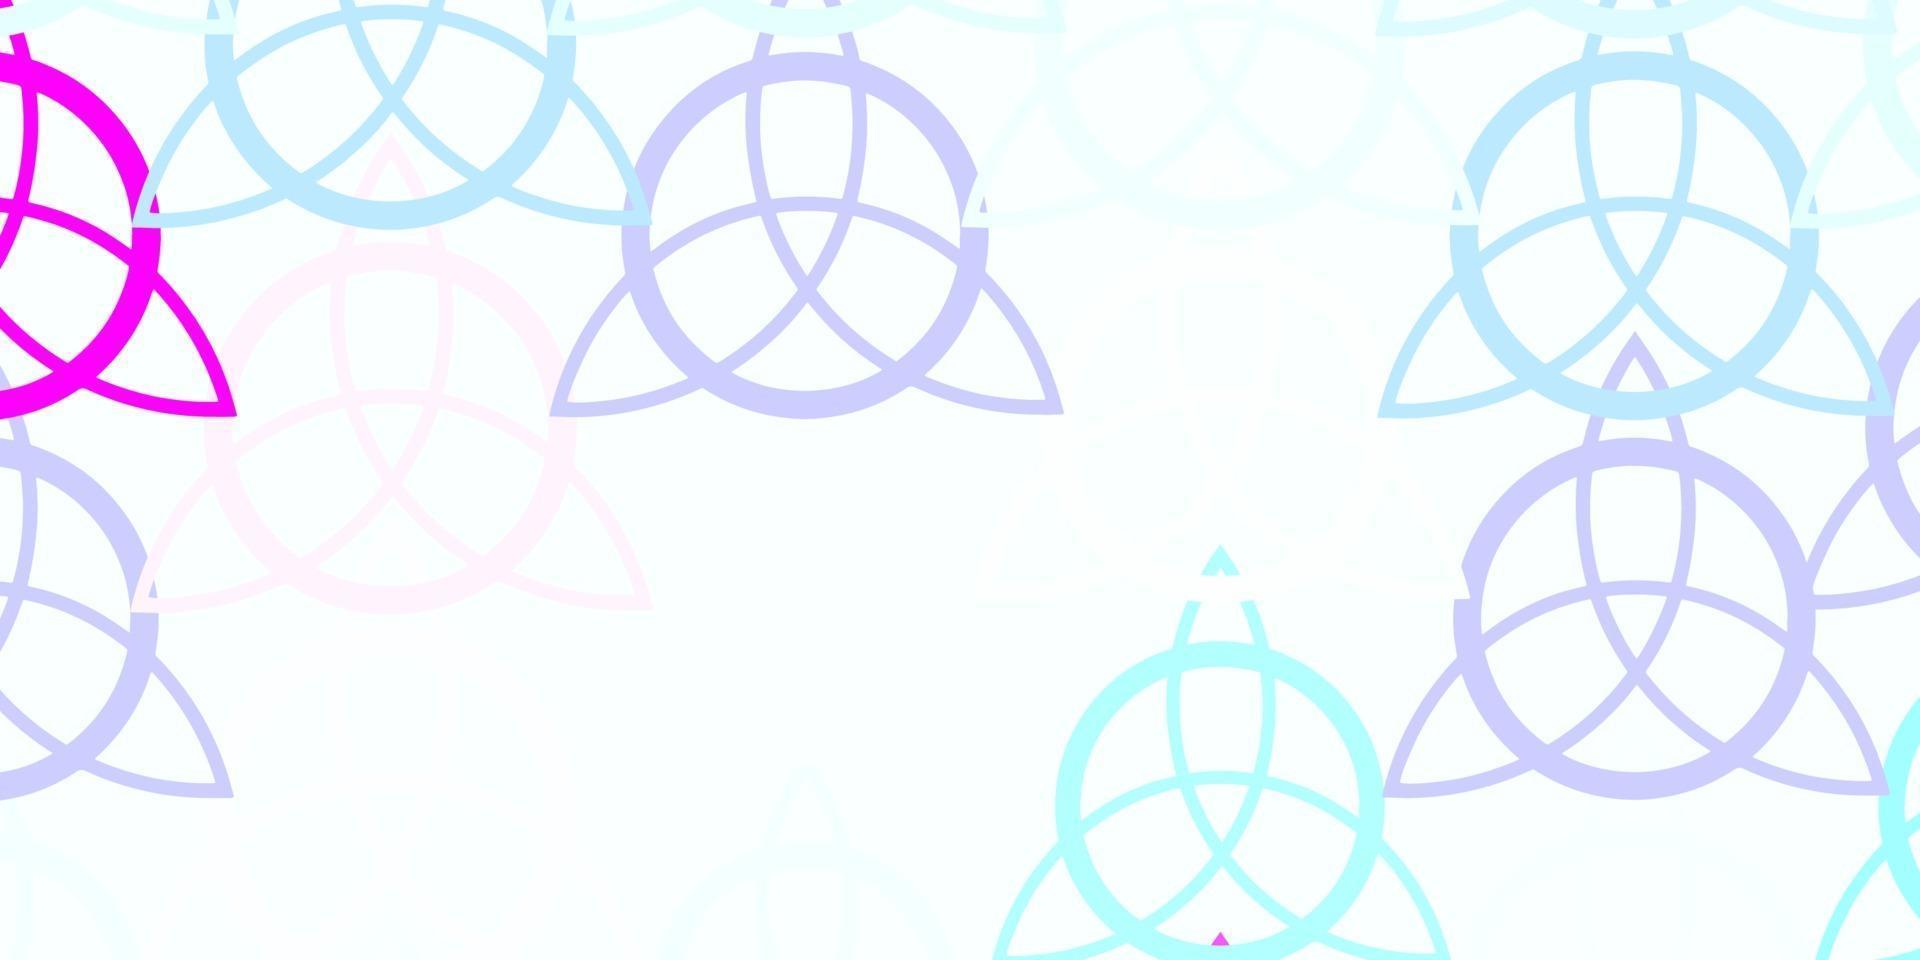 ljusrosa, blå vektorstruktur med religionssymboler. vektor